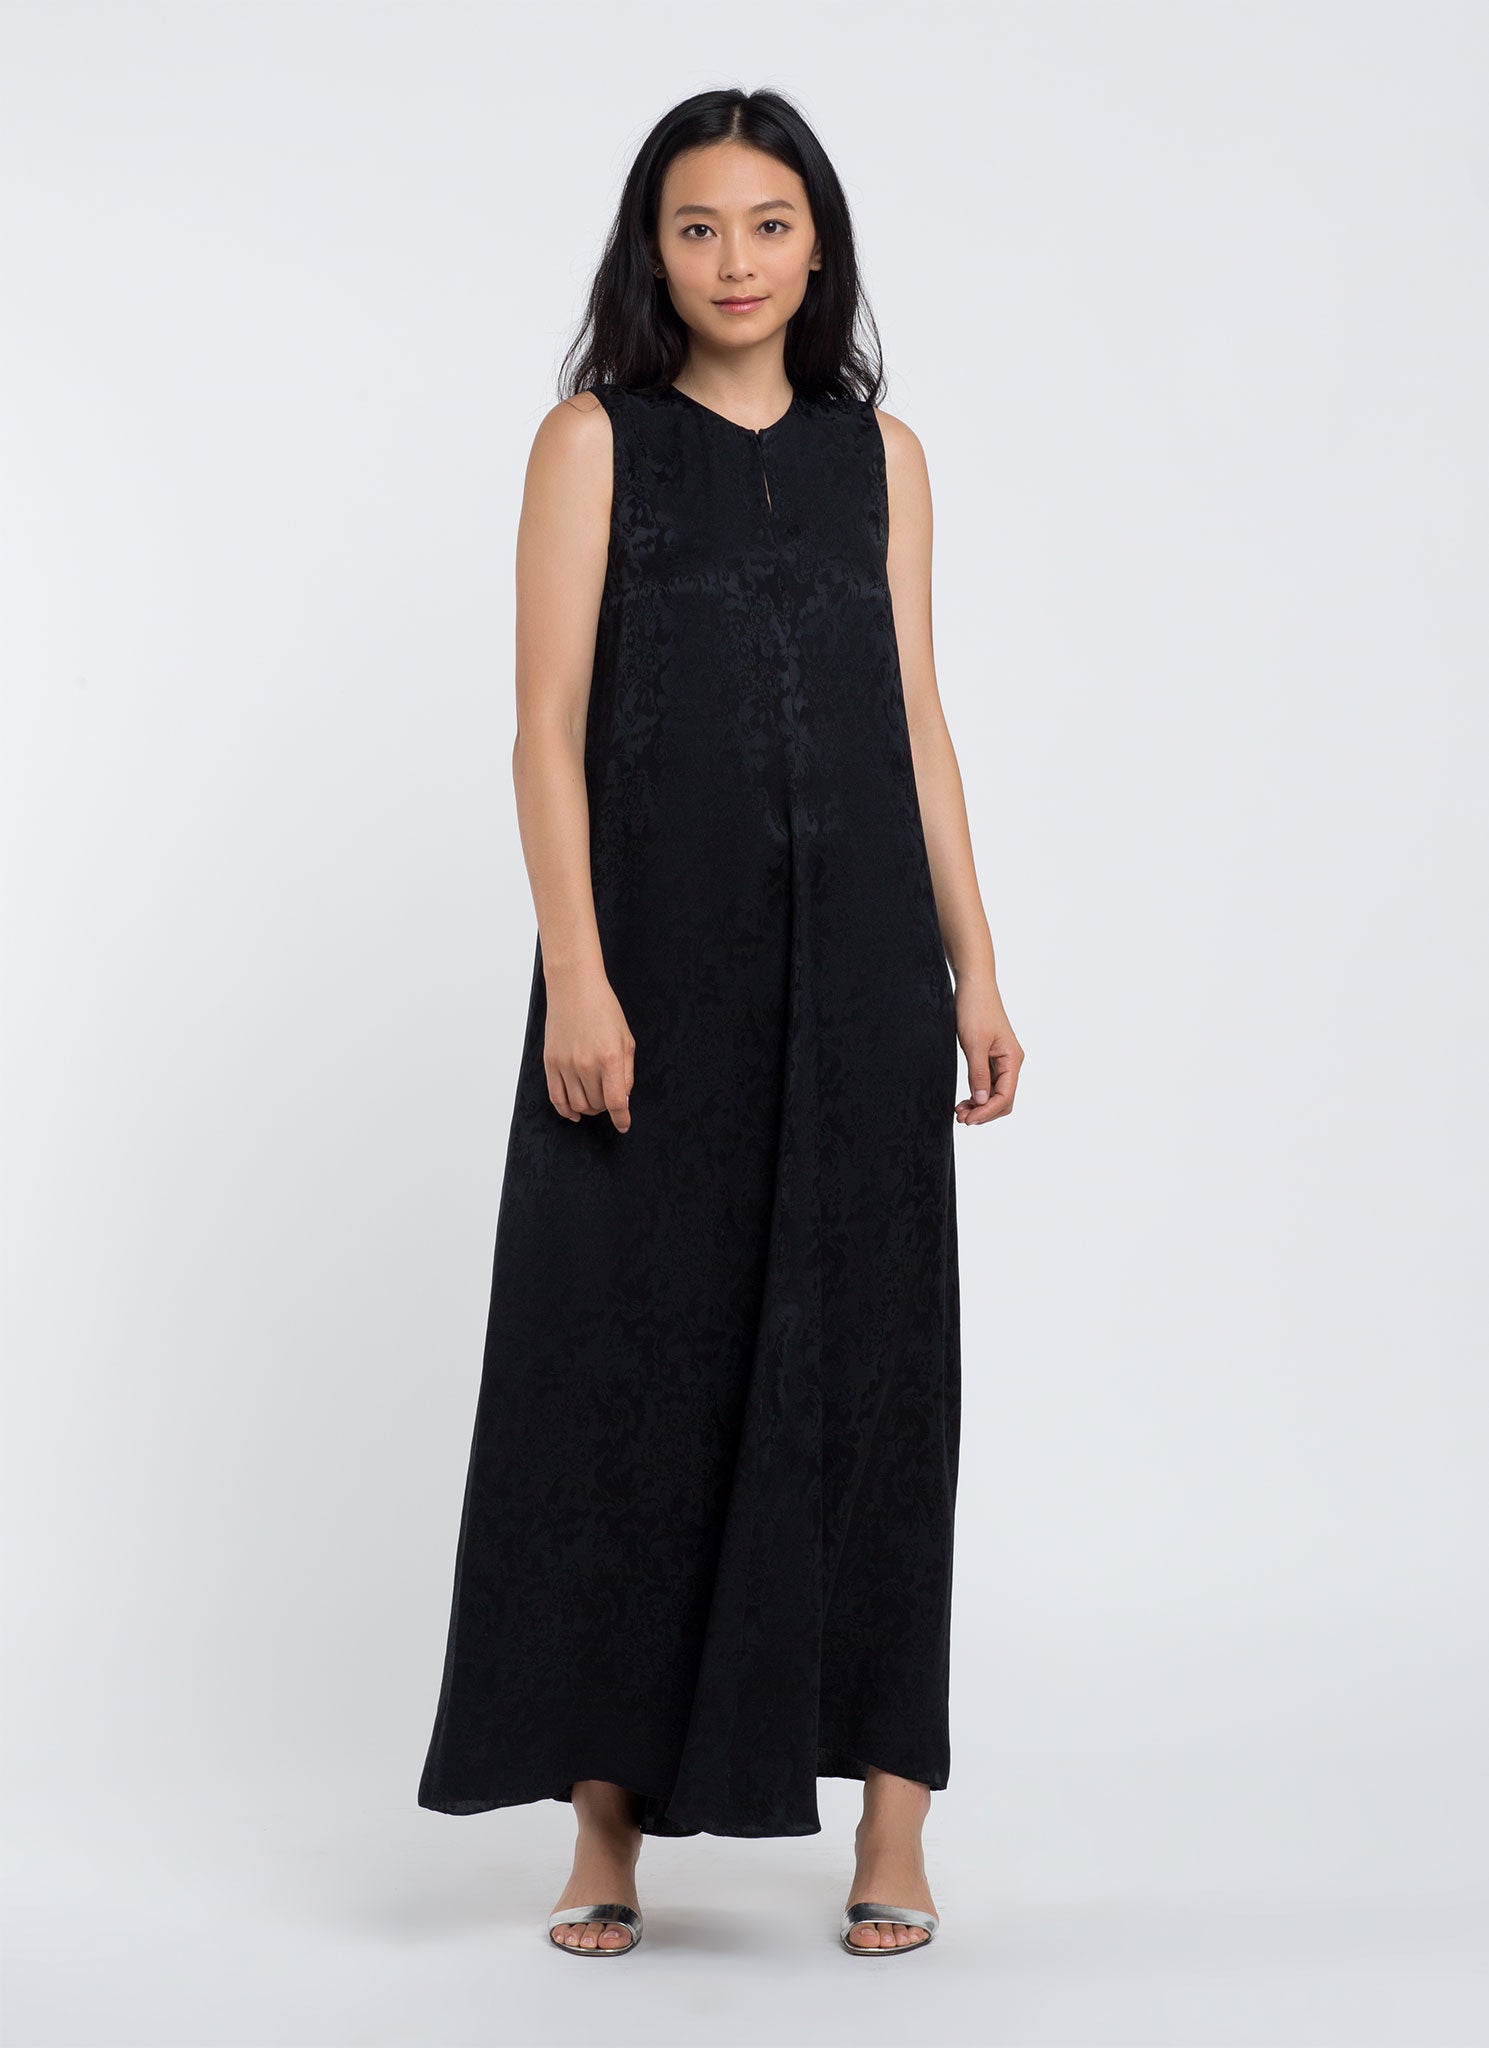 KAAREM - Calo Front Seam Sleeveless A-Line Silk Dress - Black Floral